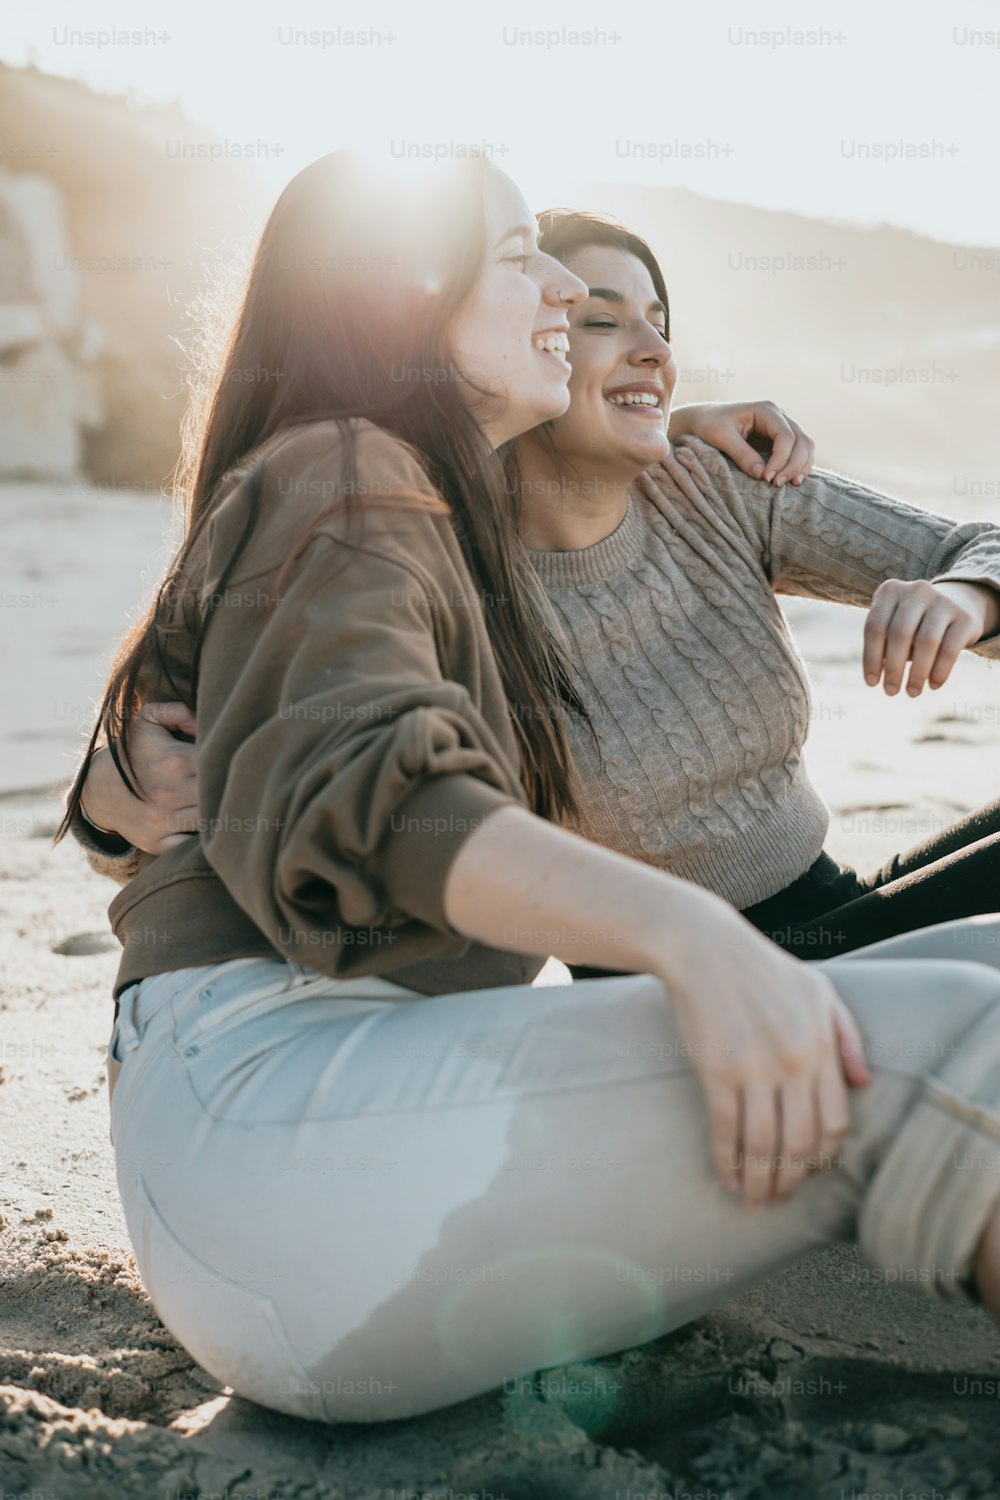 모래 사장 위에 앉아 있는 두 명의 여성